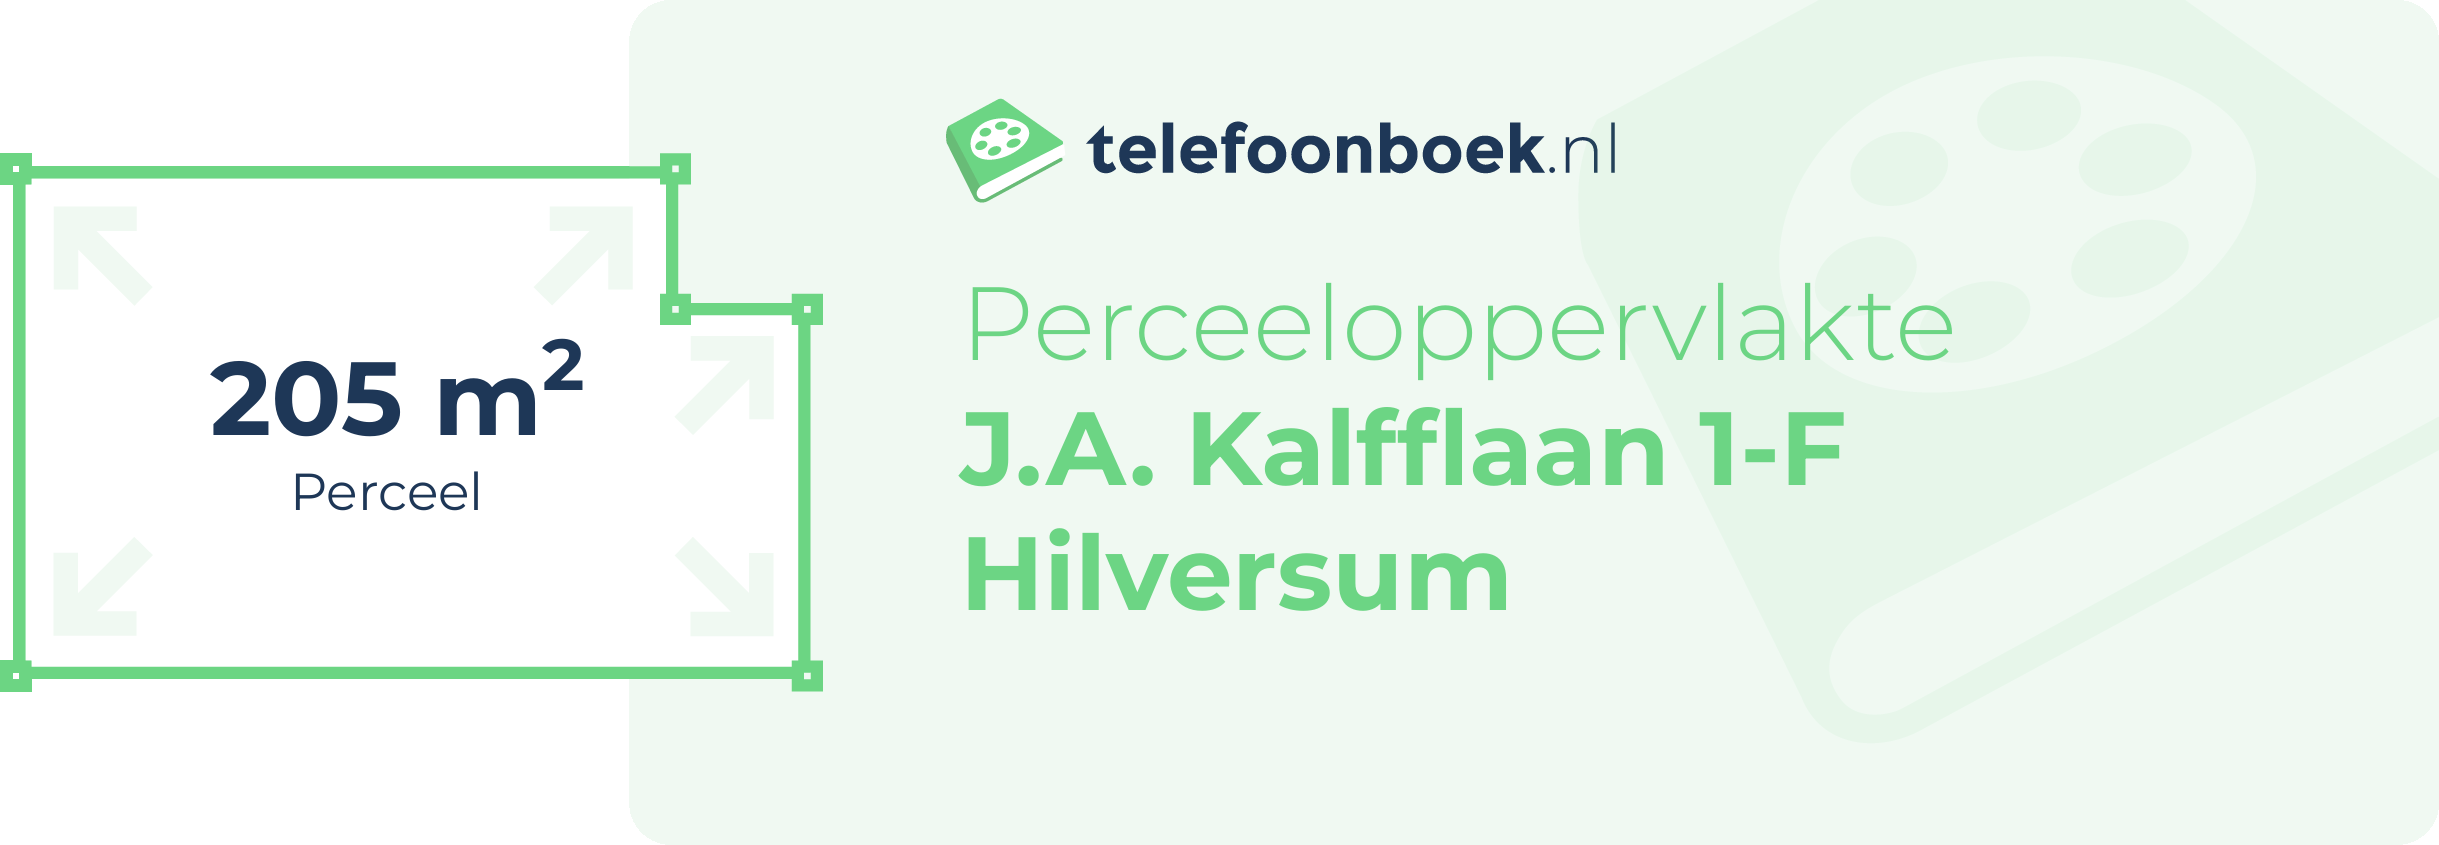 Perceeloppervlakte J.A. Kalfflaan 1-F Hilversum